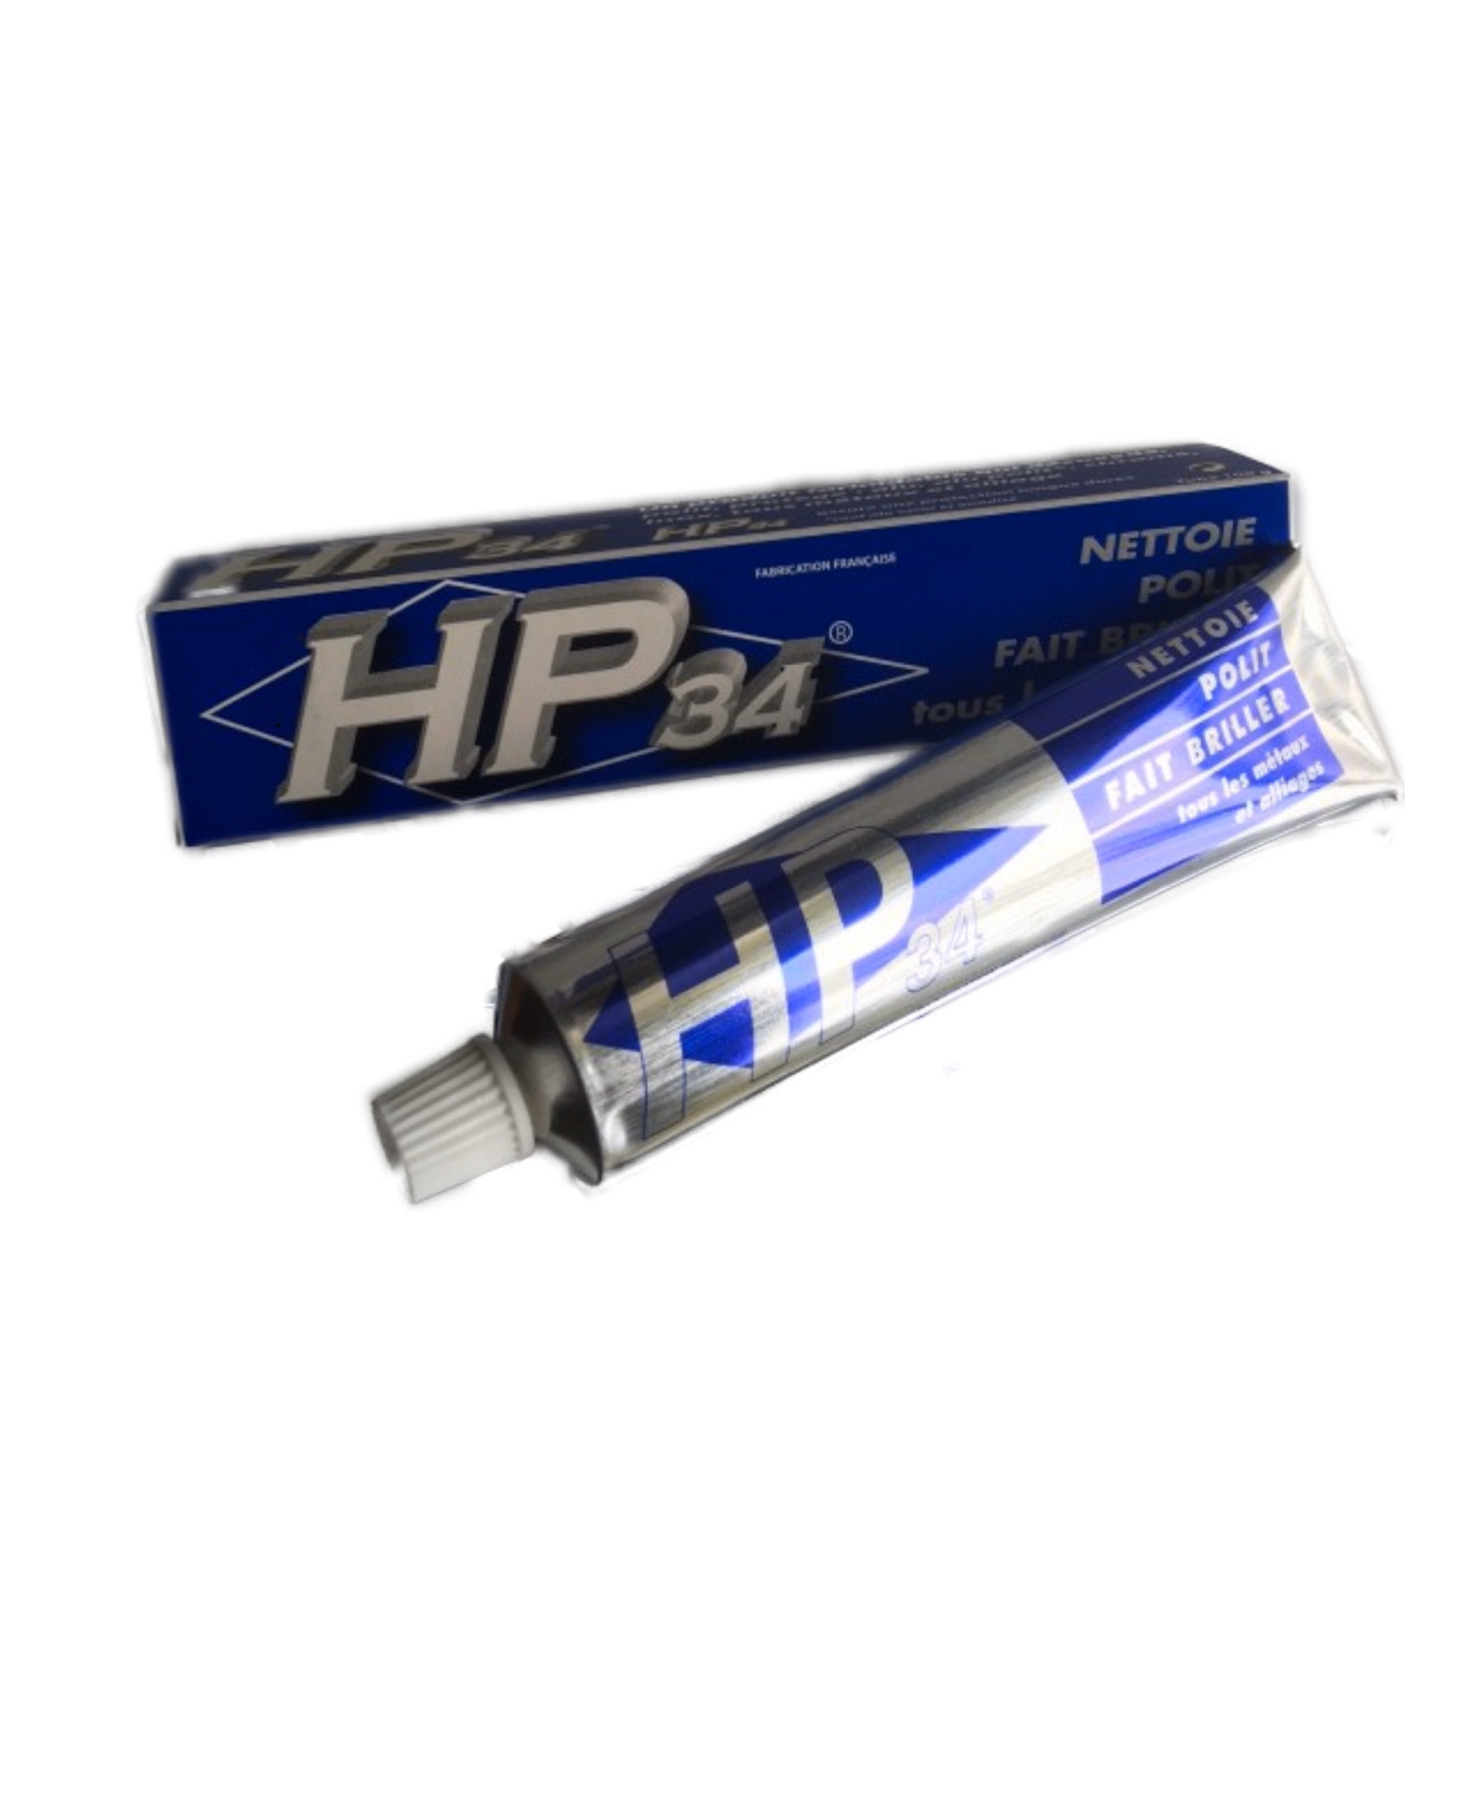 HP34 Pâte à polir en kit pour métaux - Swiss Distribution